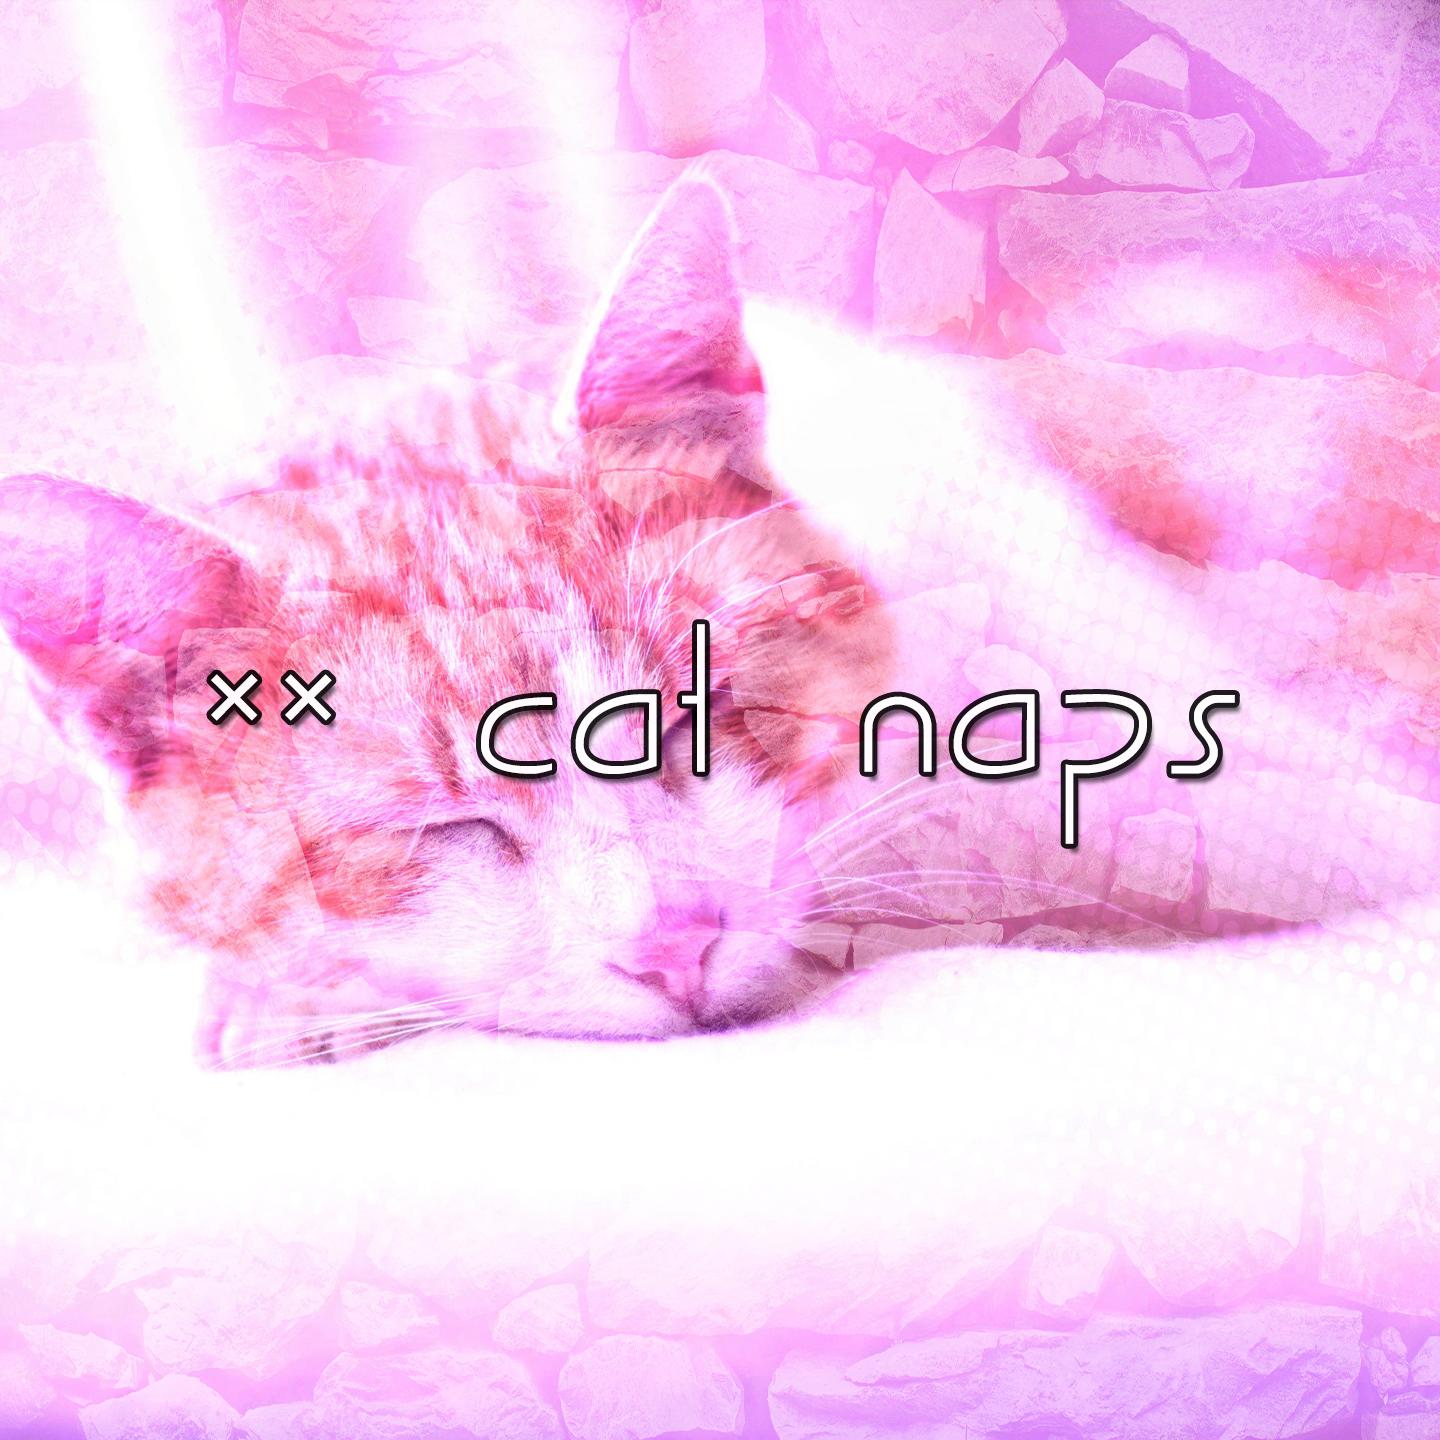 63 Cat Naps